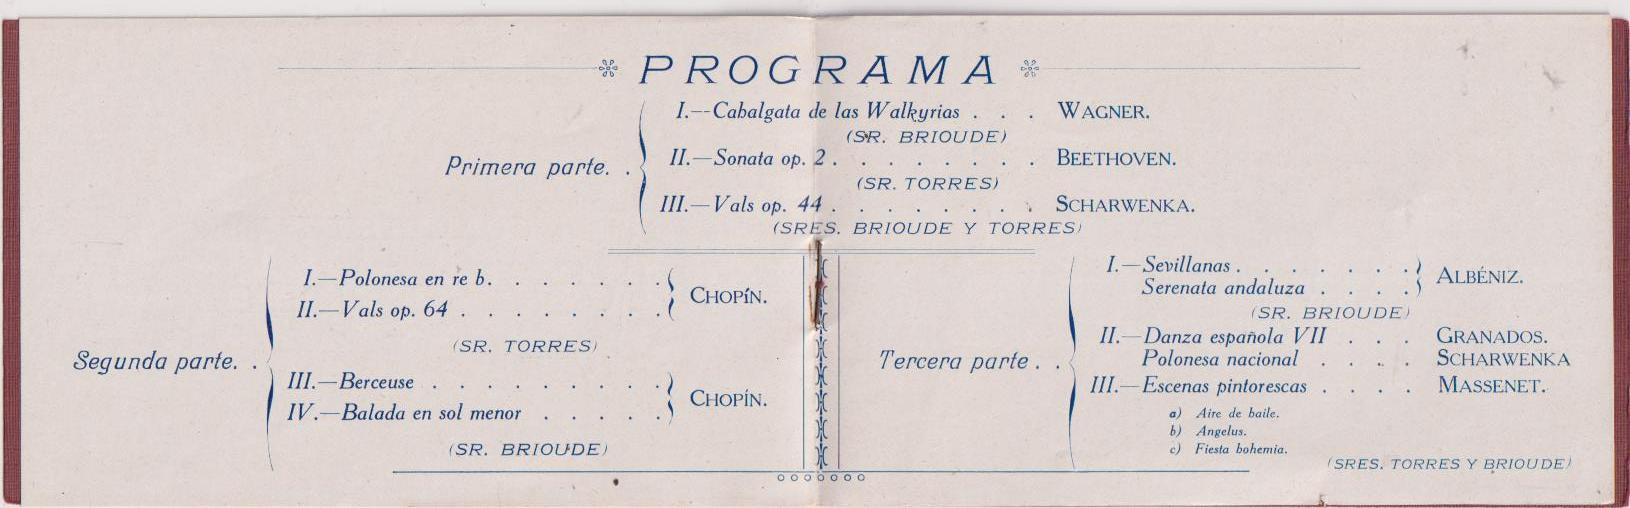 Programa del Concierto Torres y Brioude. Día 25 Octubre de 1914. Sanlúcar la Mayor